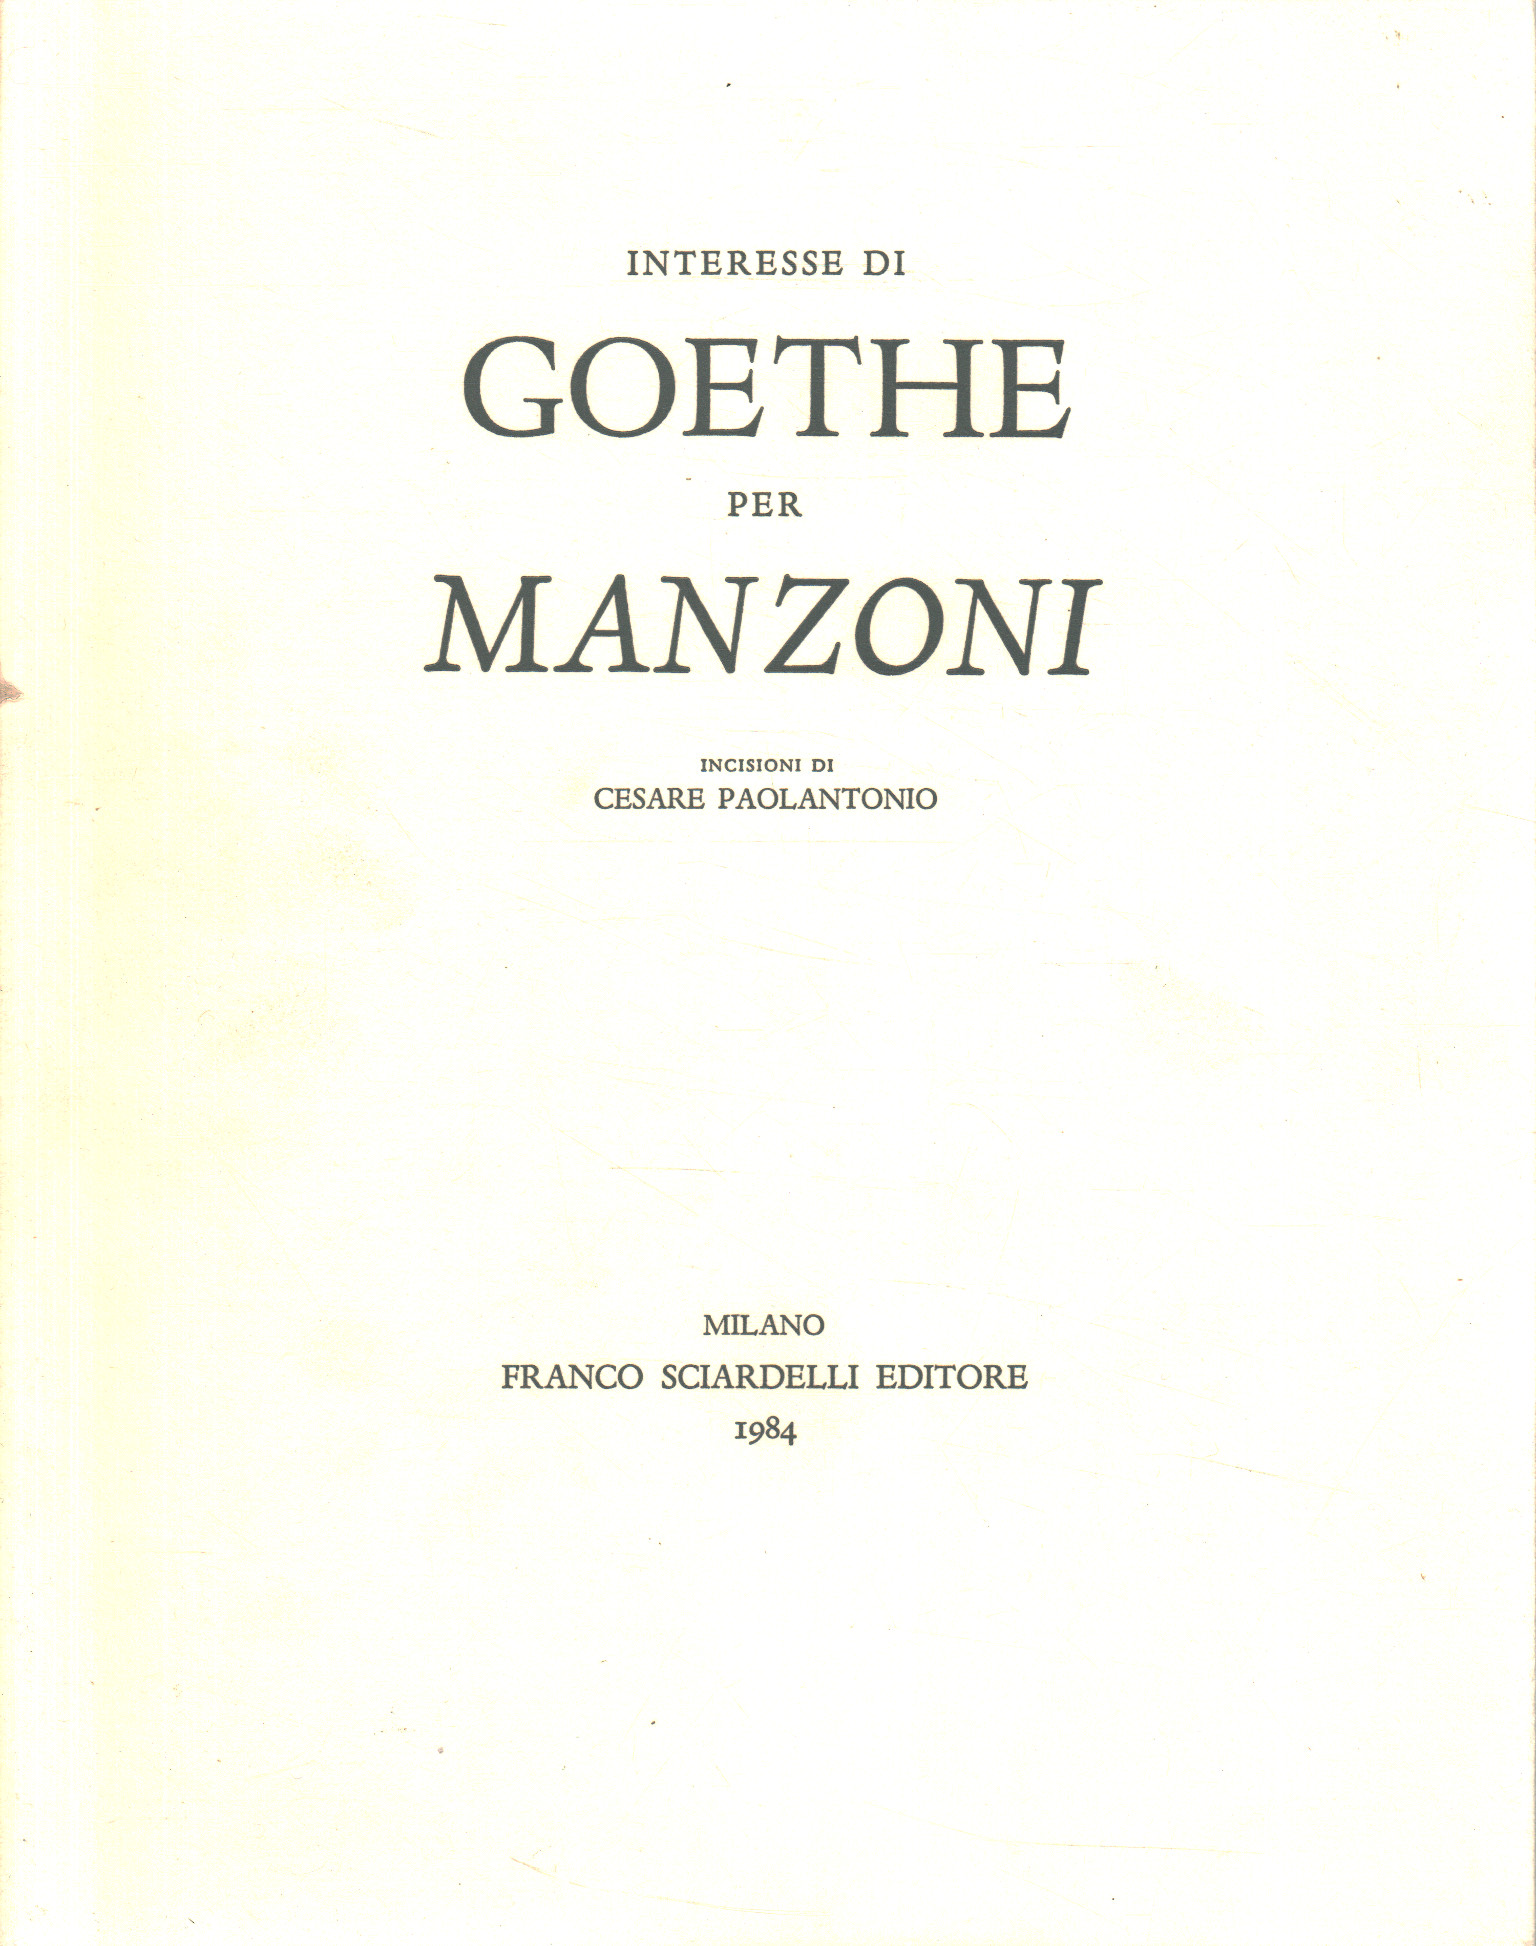 El interés de Goethe por Manzoni